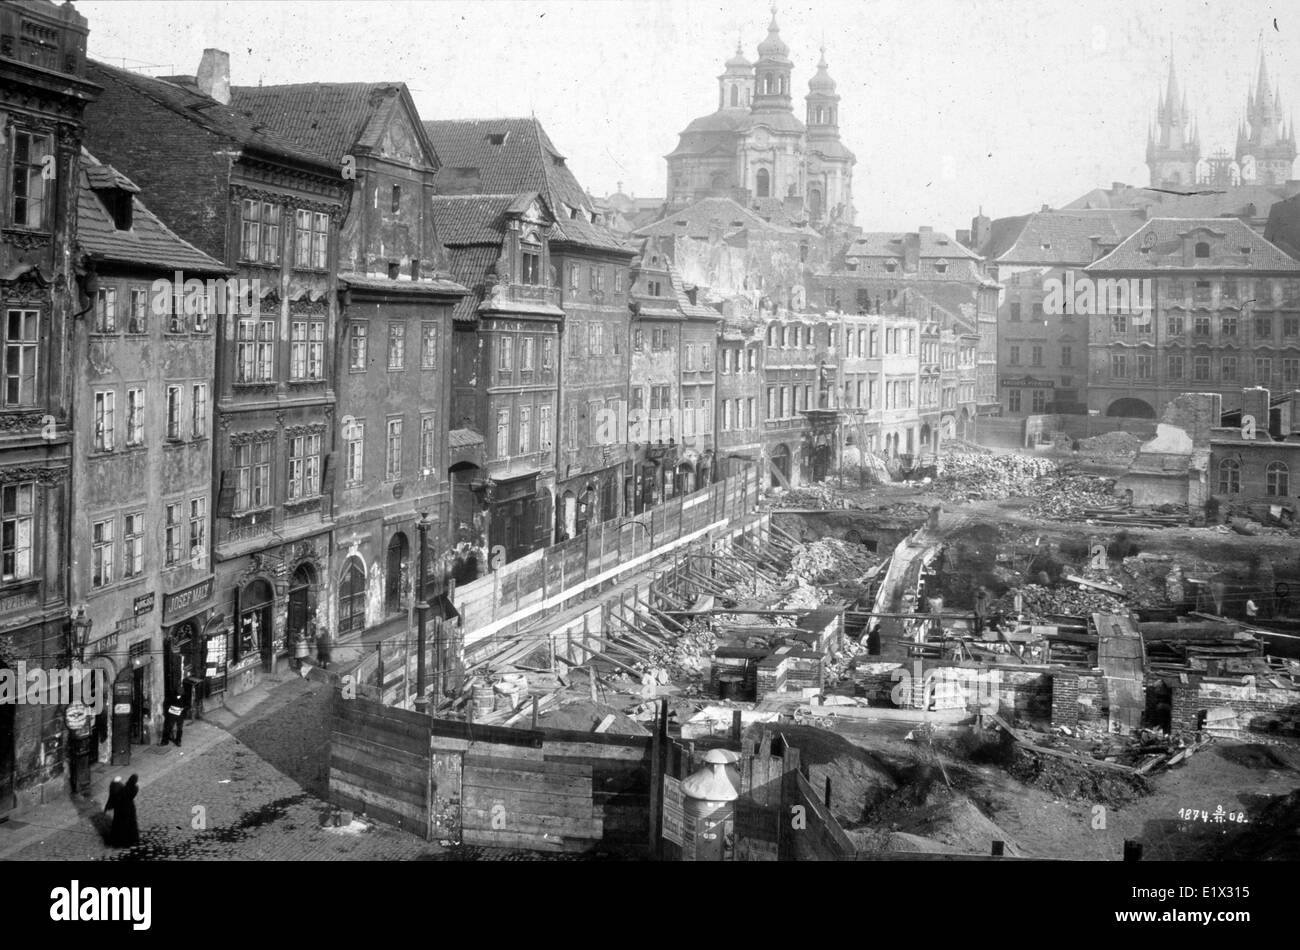 Quartier juif de Prague, l'ancien ghetto juif de la vieille ville. c. 1920. L'Autriche-Hongrie Banque D'Images